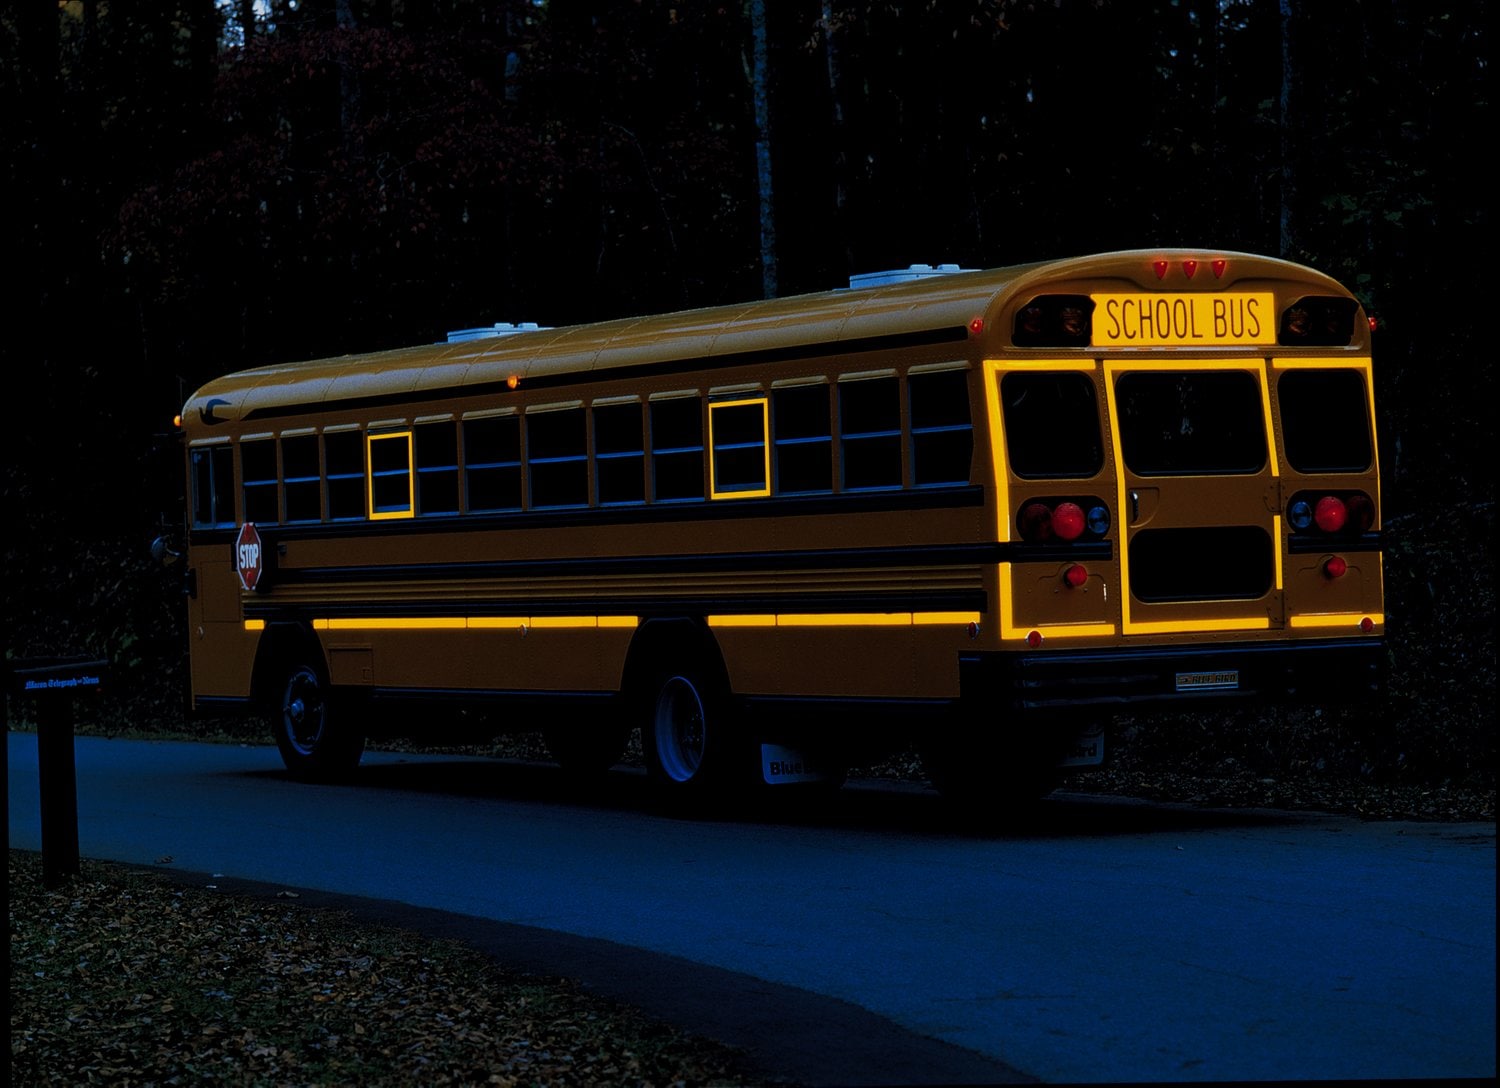 7010389158 - 3M Diamond Grade School Bus Sign SBPFYDG-41 983-21, Fluorescent Yellow
"School Bus", 8.75 in x 36 in